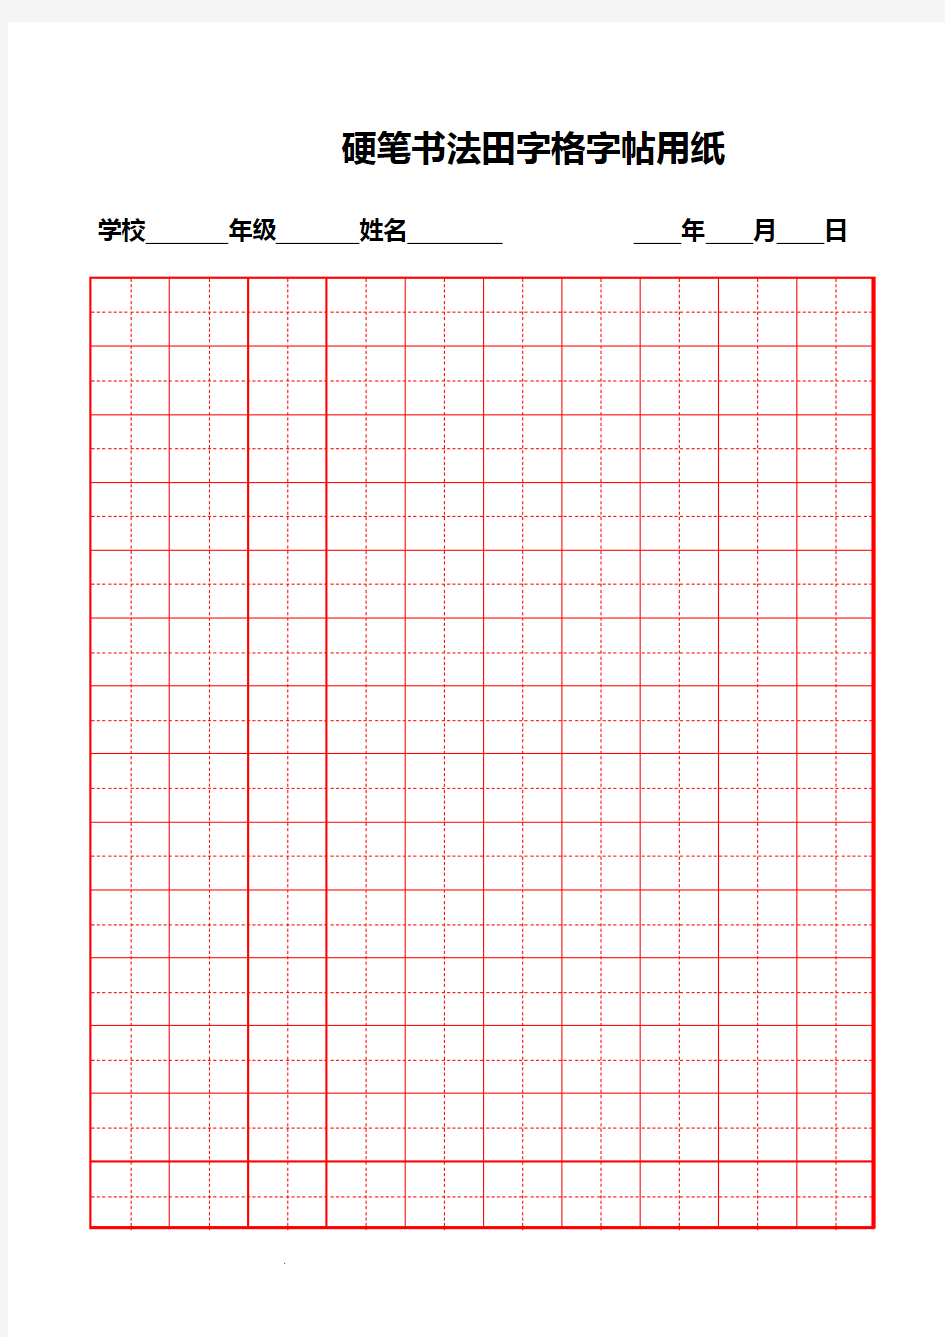 硬笔书法纸模版(方格、田字格)